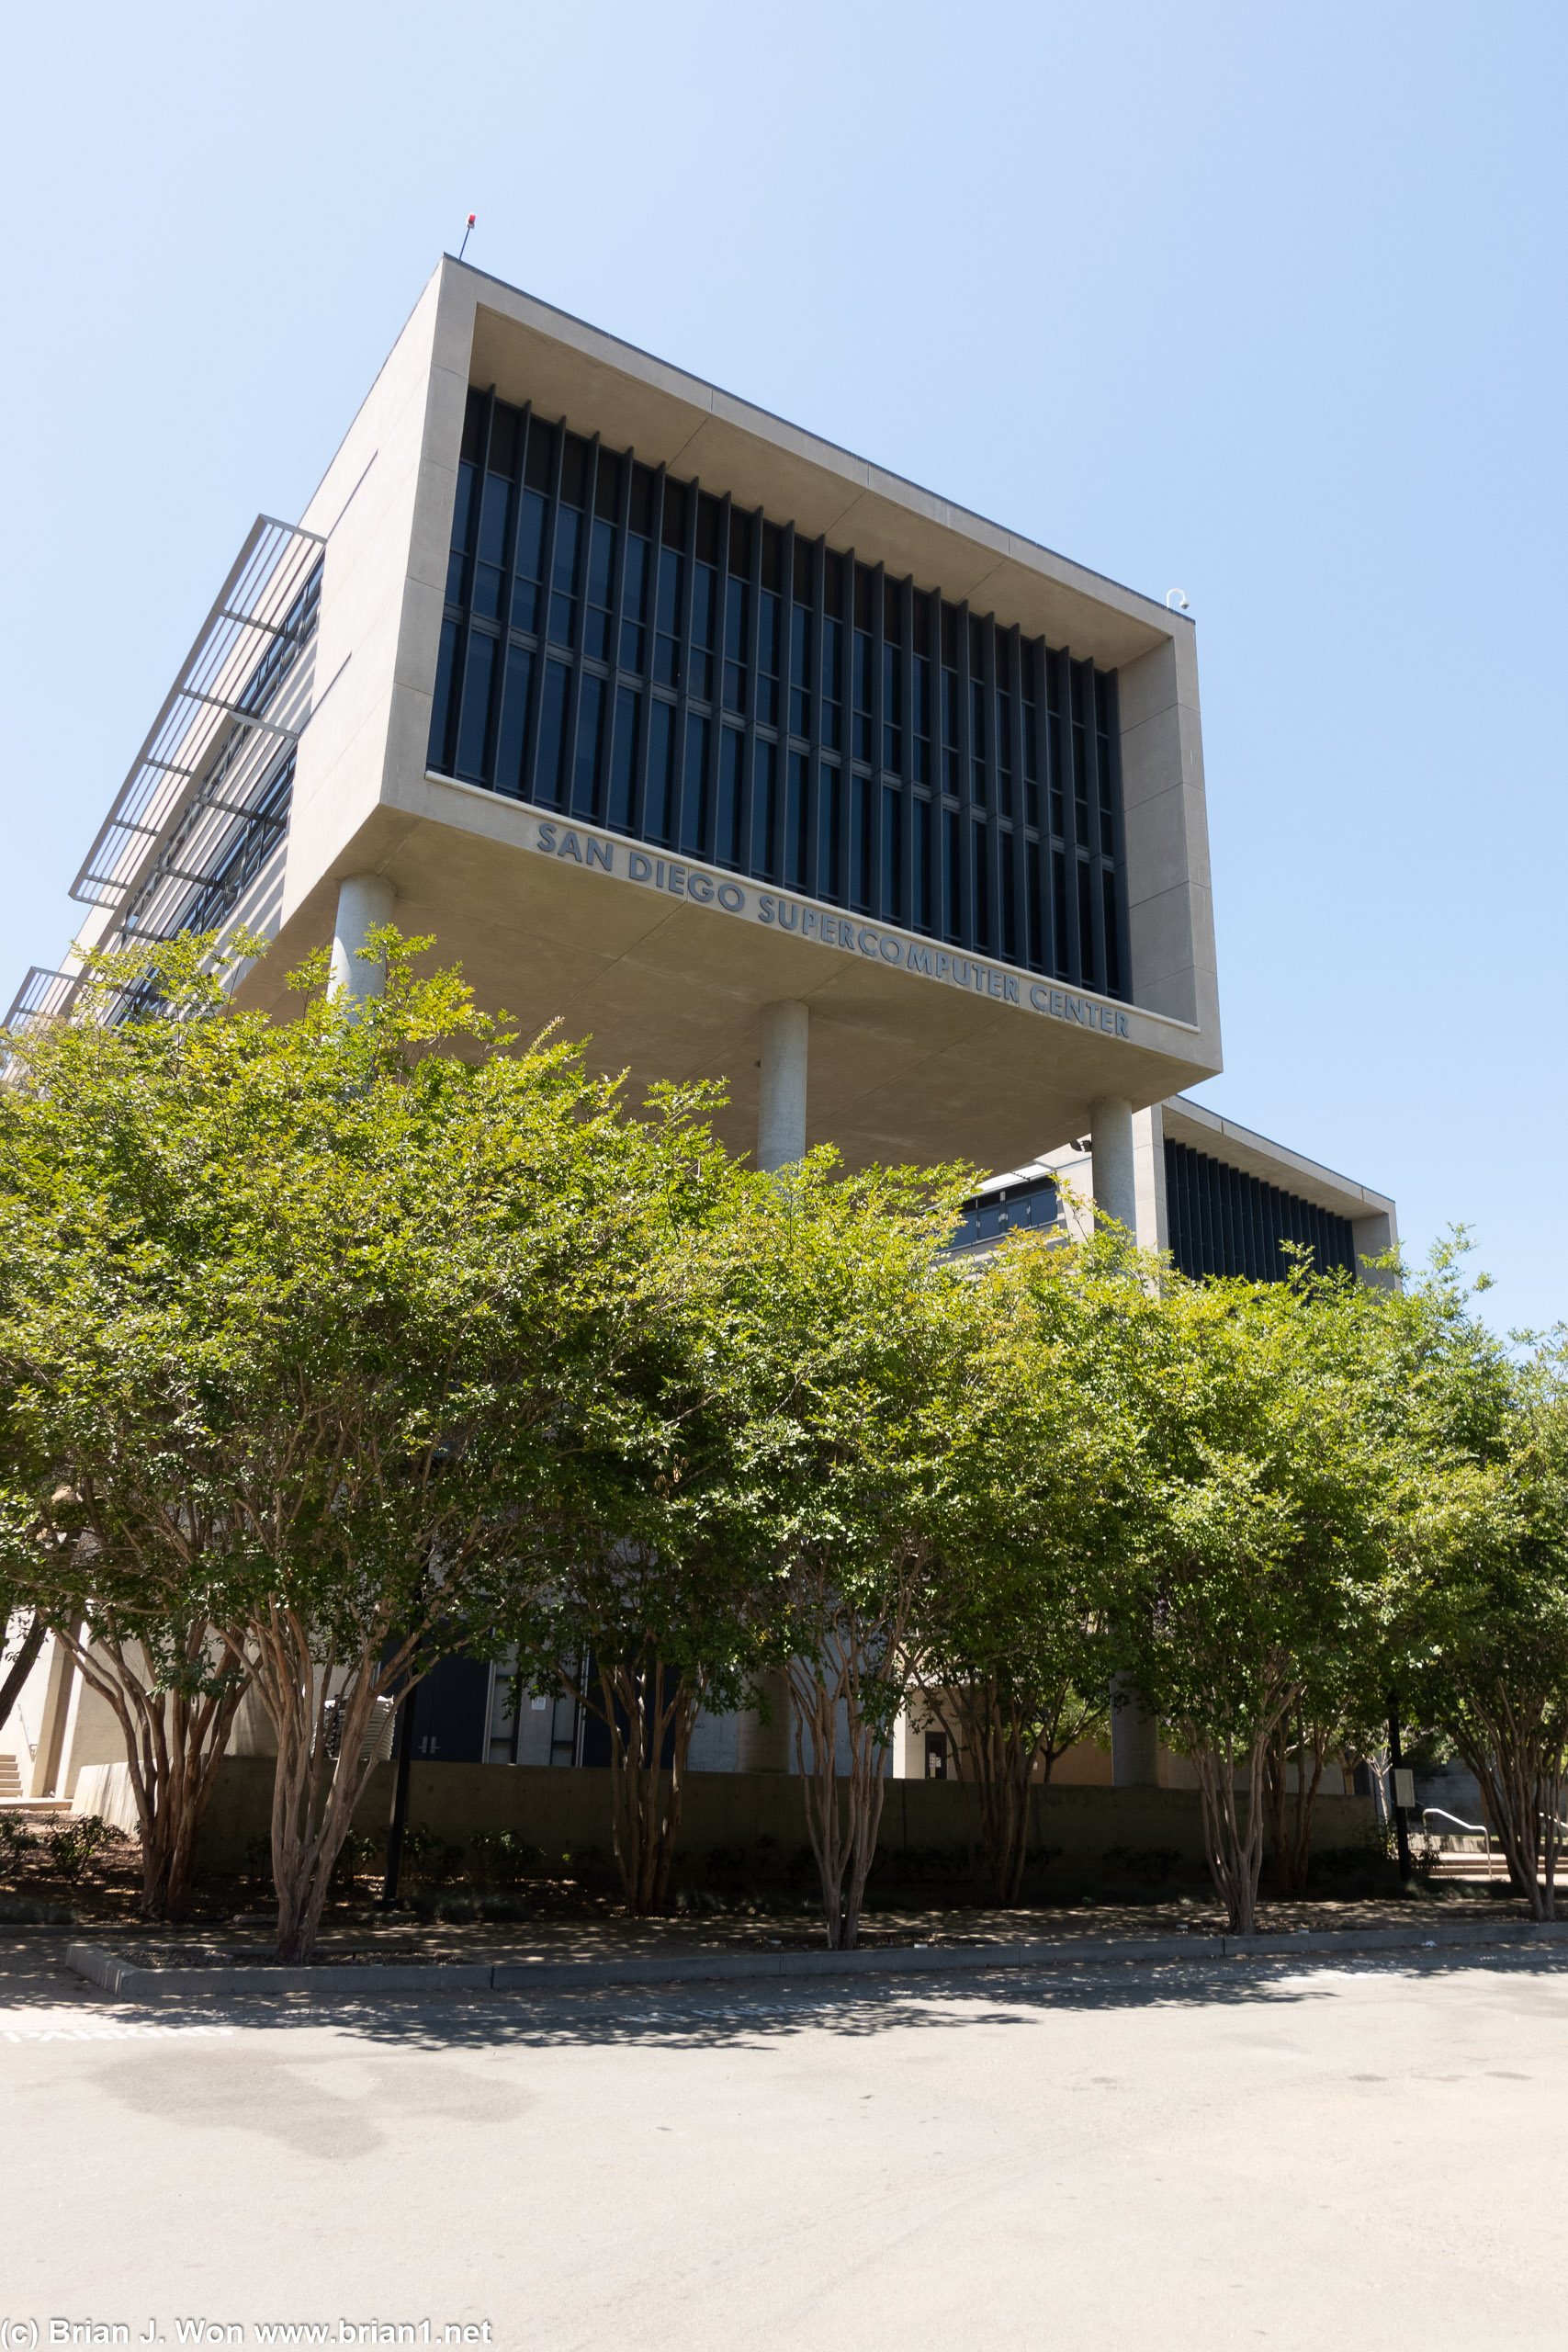 San Diego Supercomputer Center.